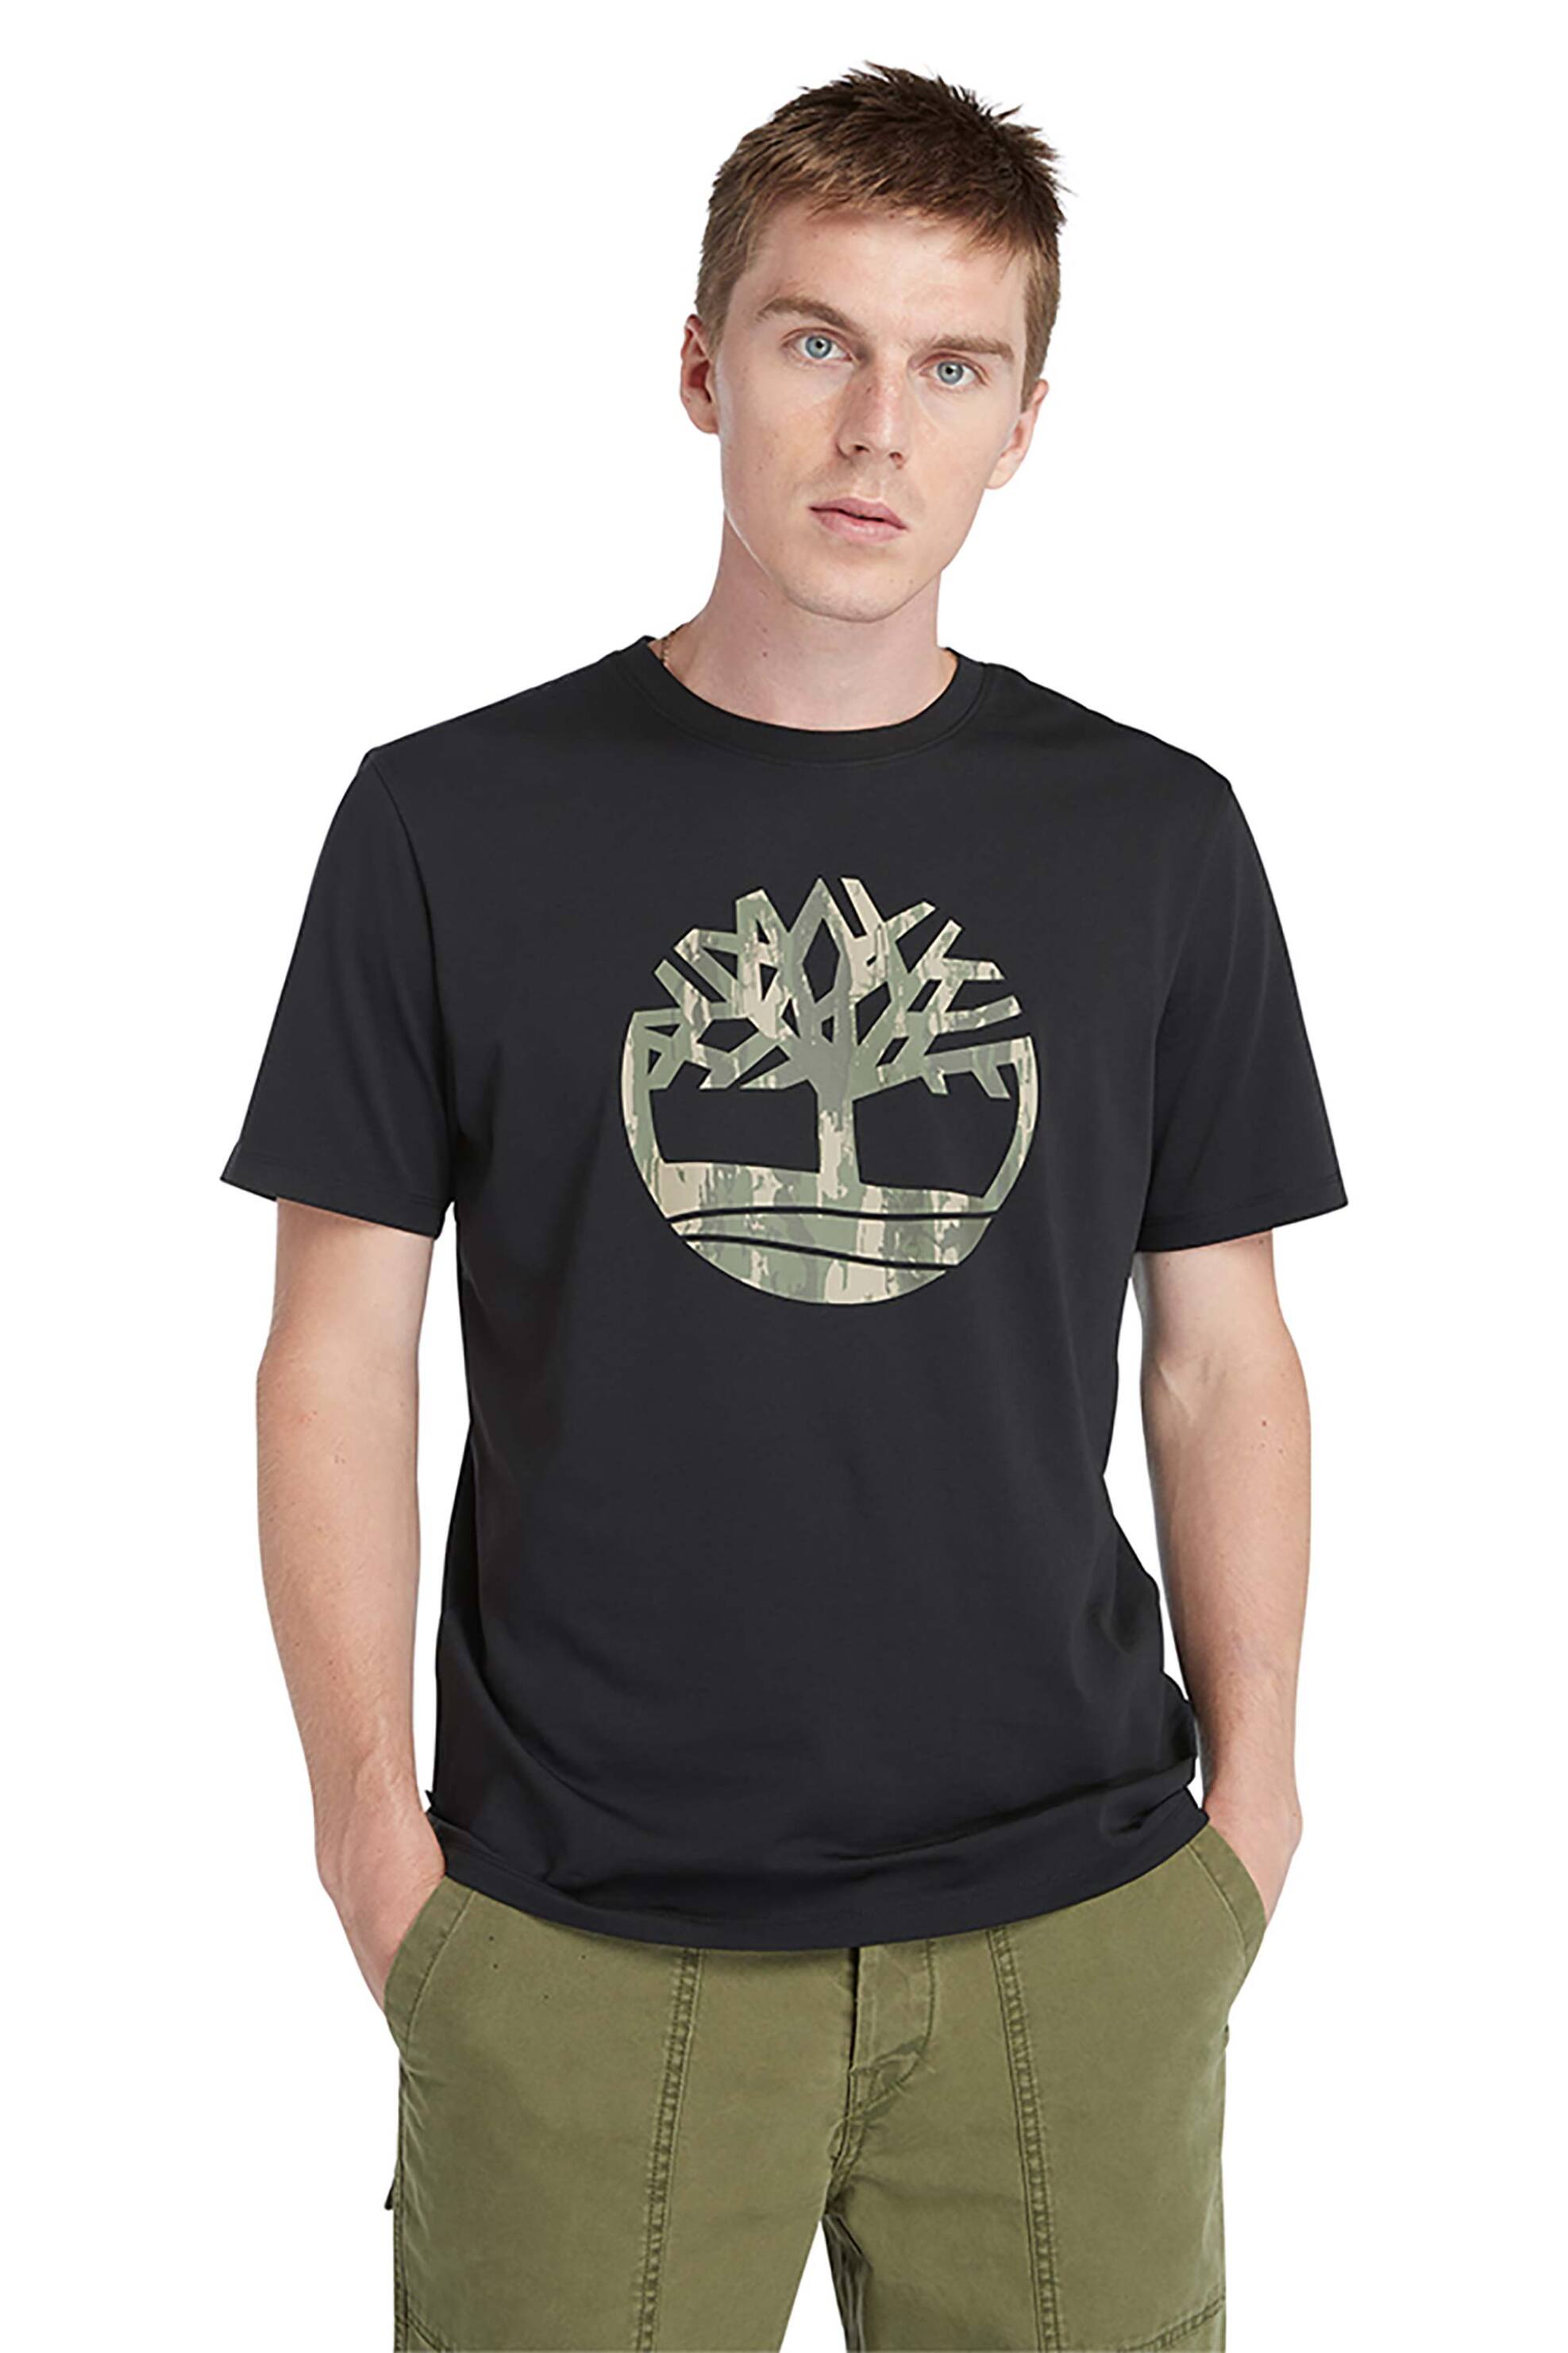 Ανδρική Μόδα > Ανδρικά Ρούχα > Ανδρικές Μπλούζες > Ανδρικά T-Shirts Timberland ανδρικό T-Shirt με logo print '' River Camo Tree Logo'' - TB0A5UP30011 Μαύρο